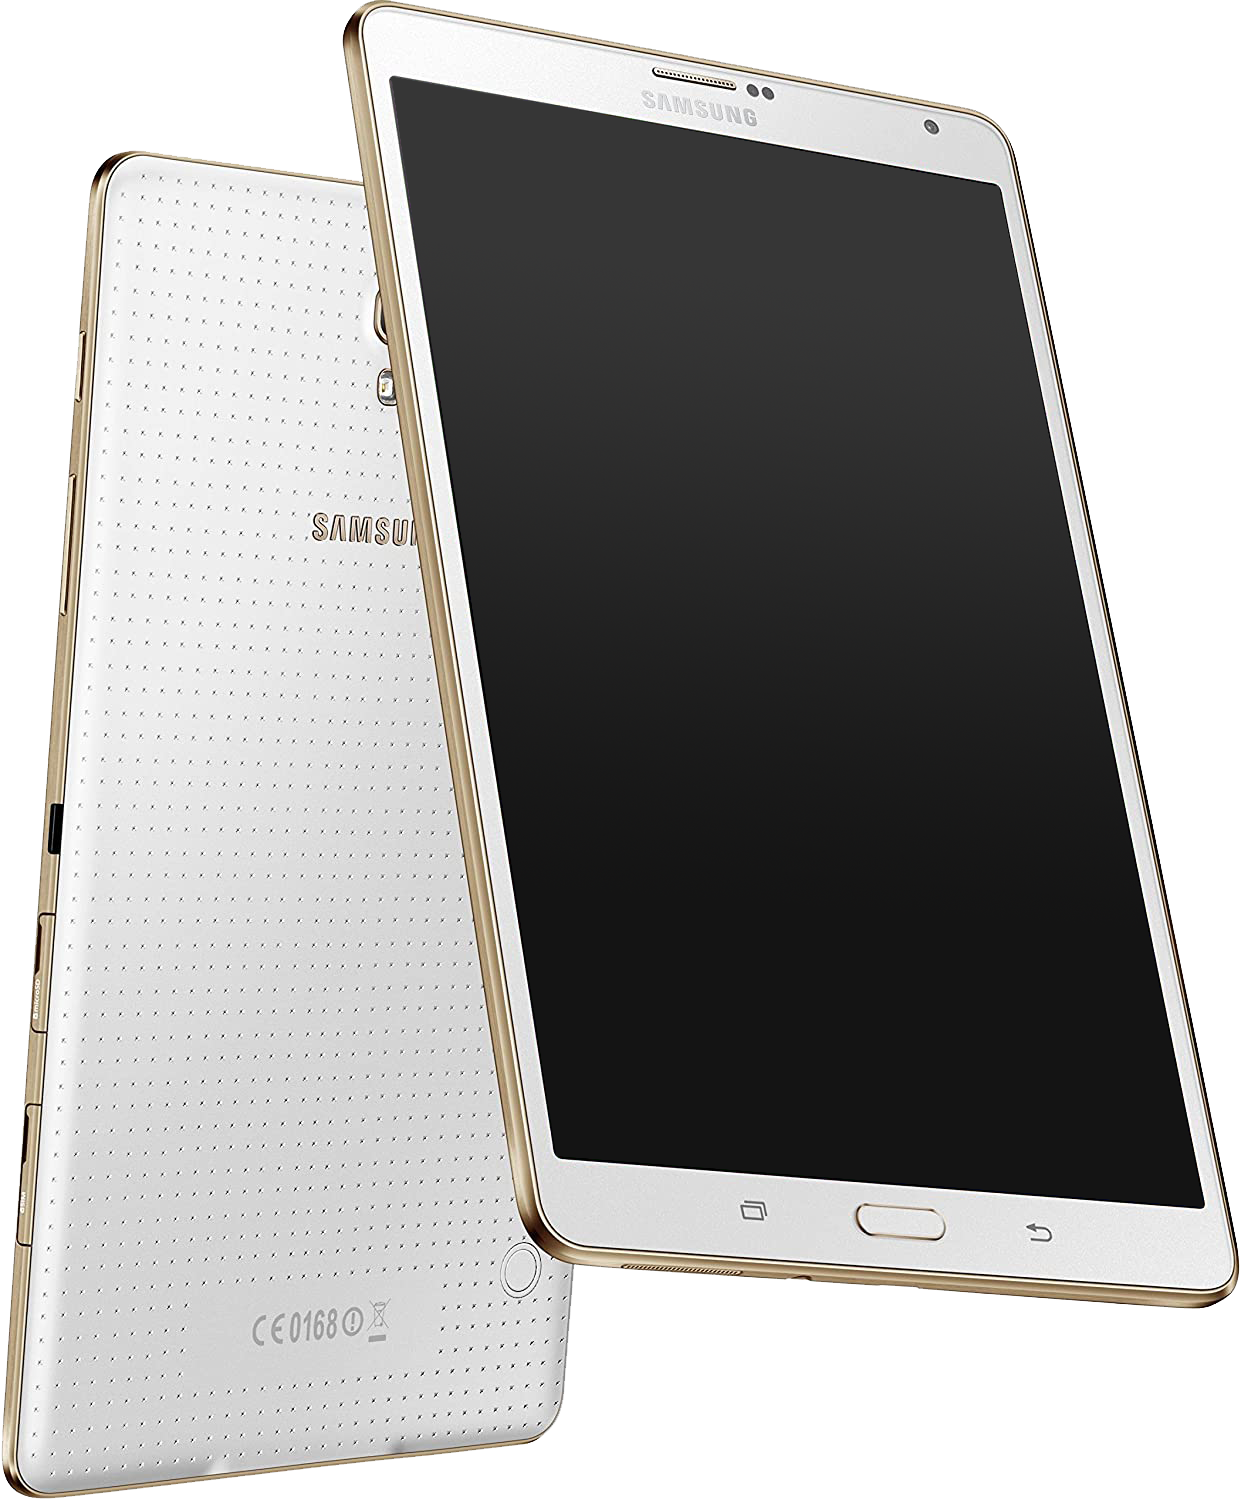 Samsung Galaxy Tab S 8.4 LTE T705 weiß - Ohne Vertrag						